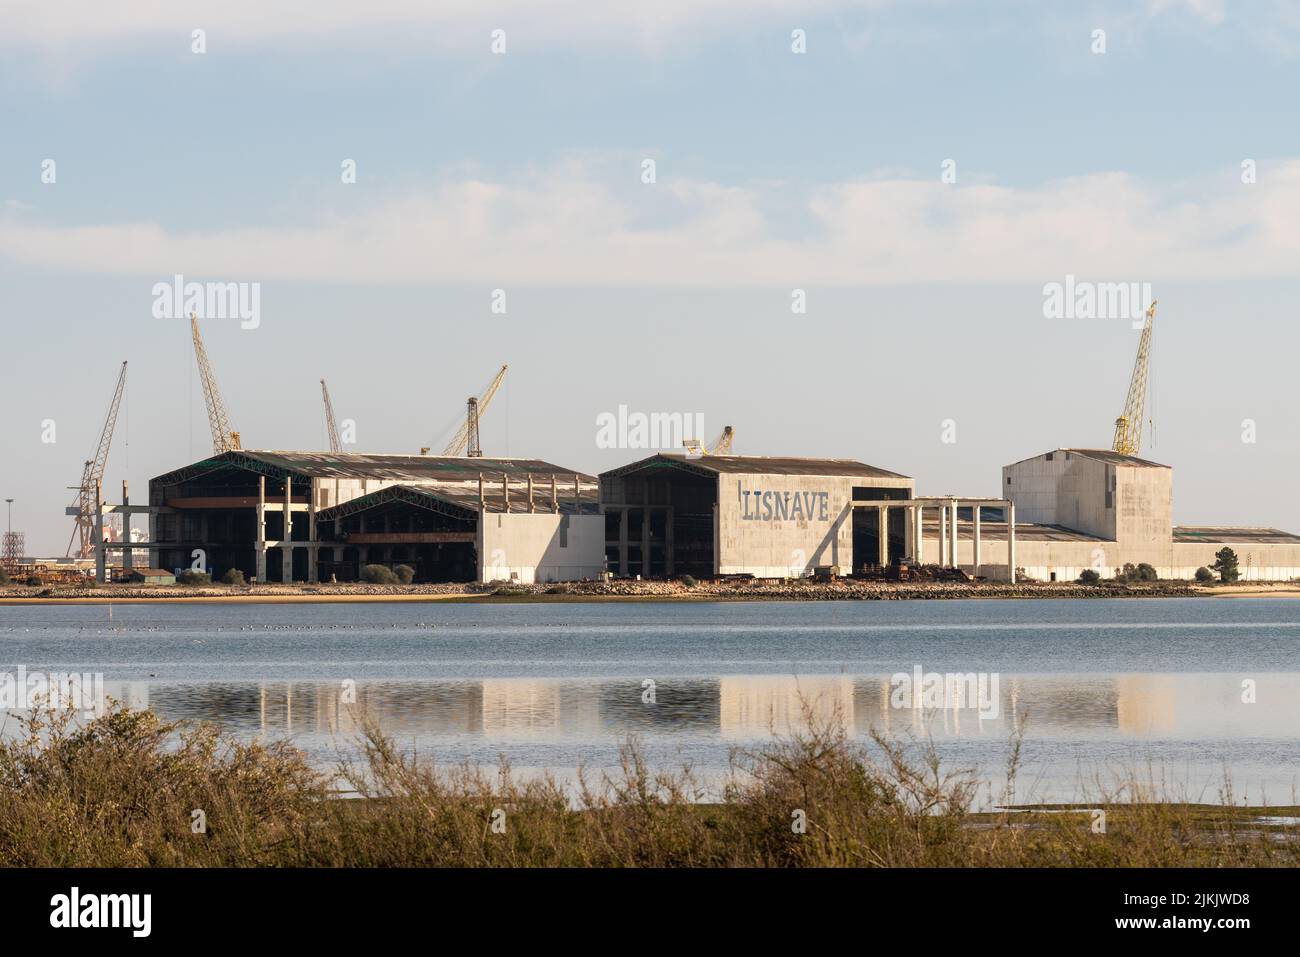 L'azienda navale di Lisnave con le sue attrezzature industriali e gru nel porto di Setubal, Portogallo Foto Stock